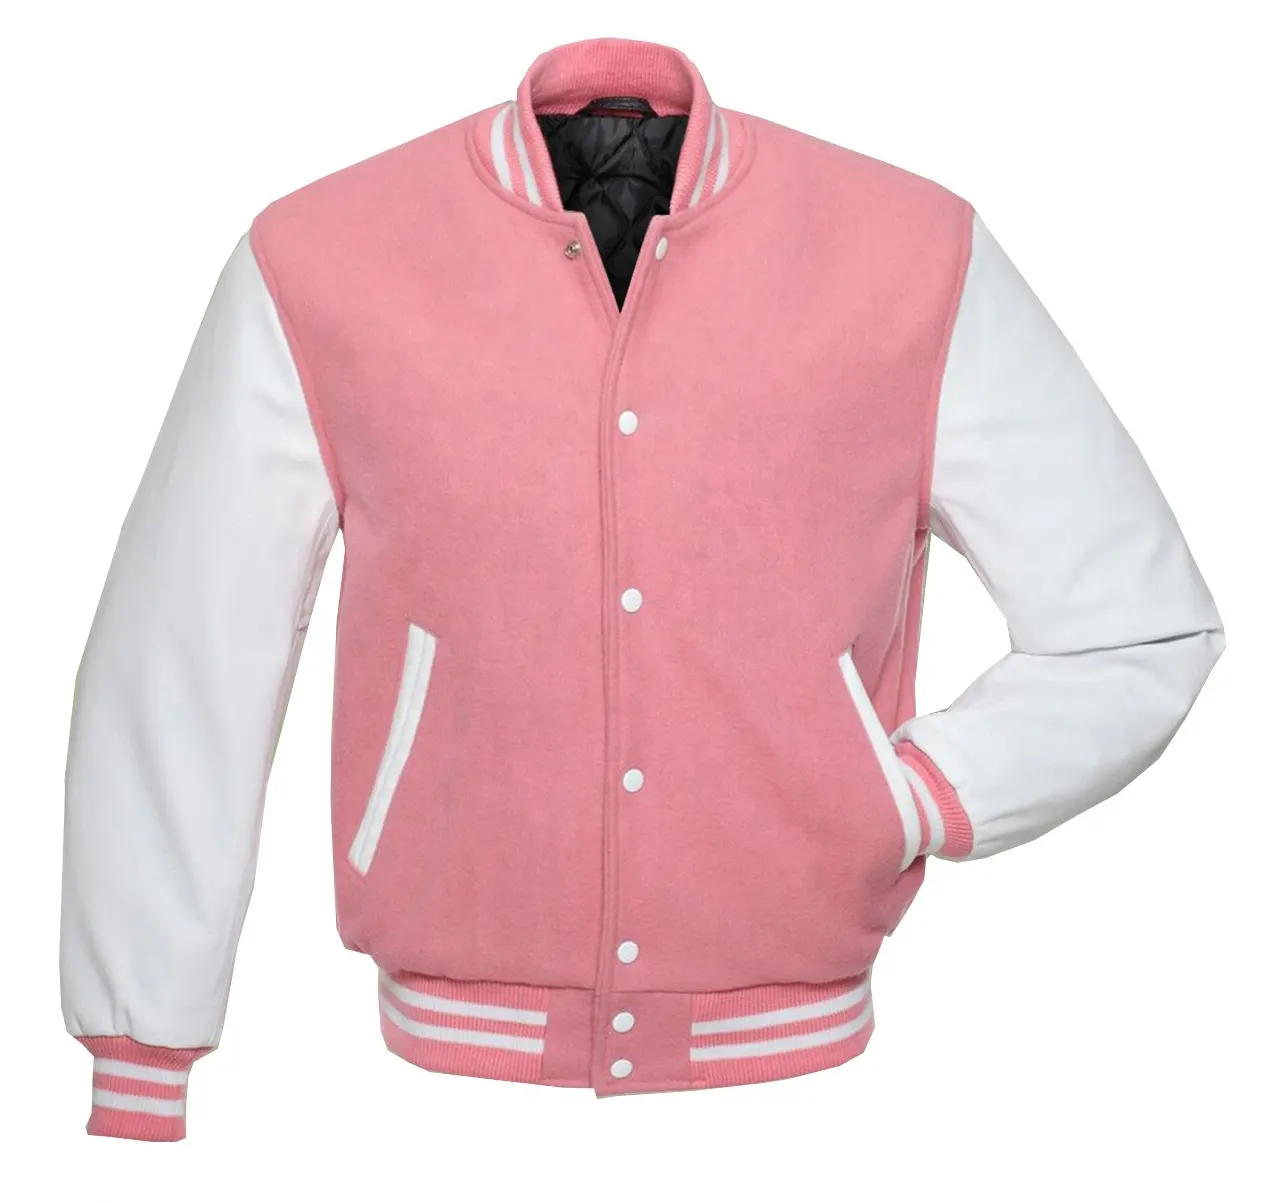 Chaqueta Letterman de lana rosa, mangas blancas de cuero auténtico/chaqueta Bomber universitaria